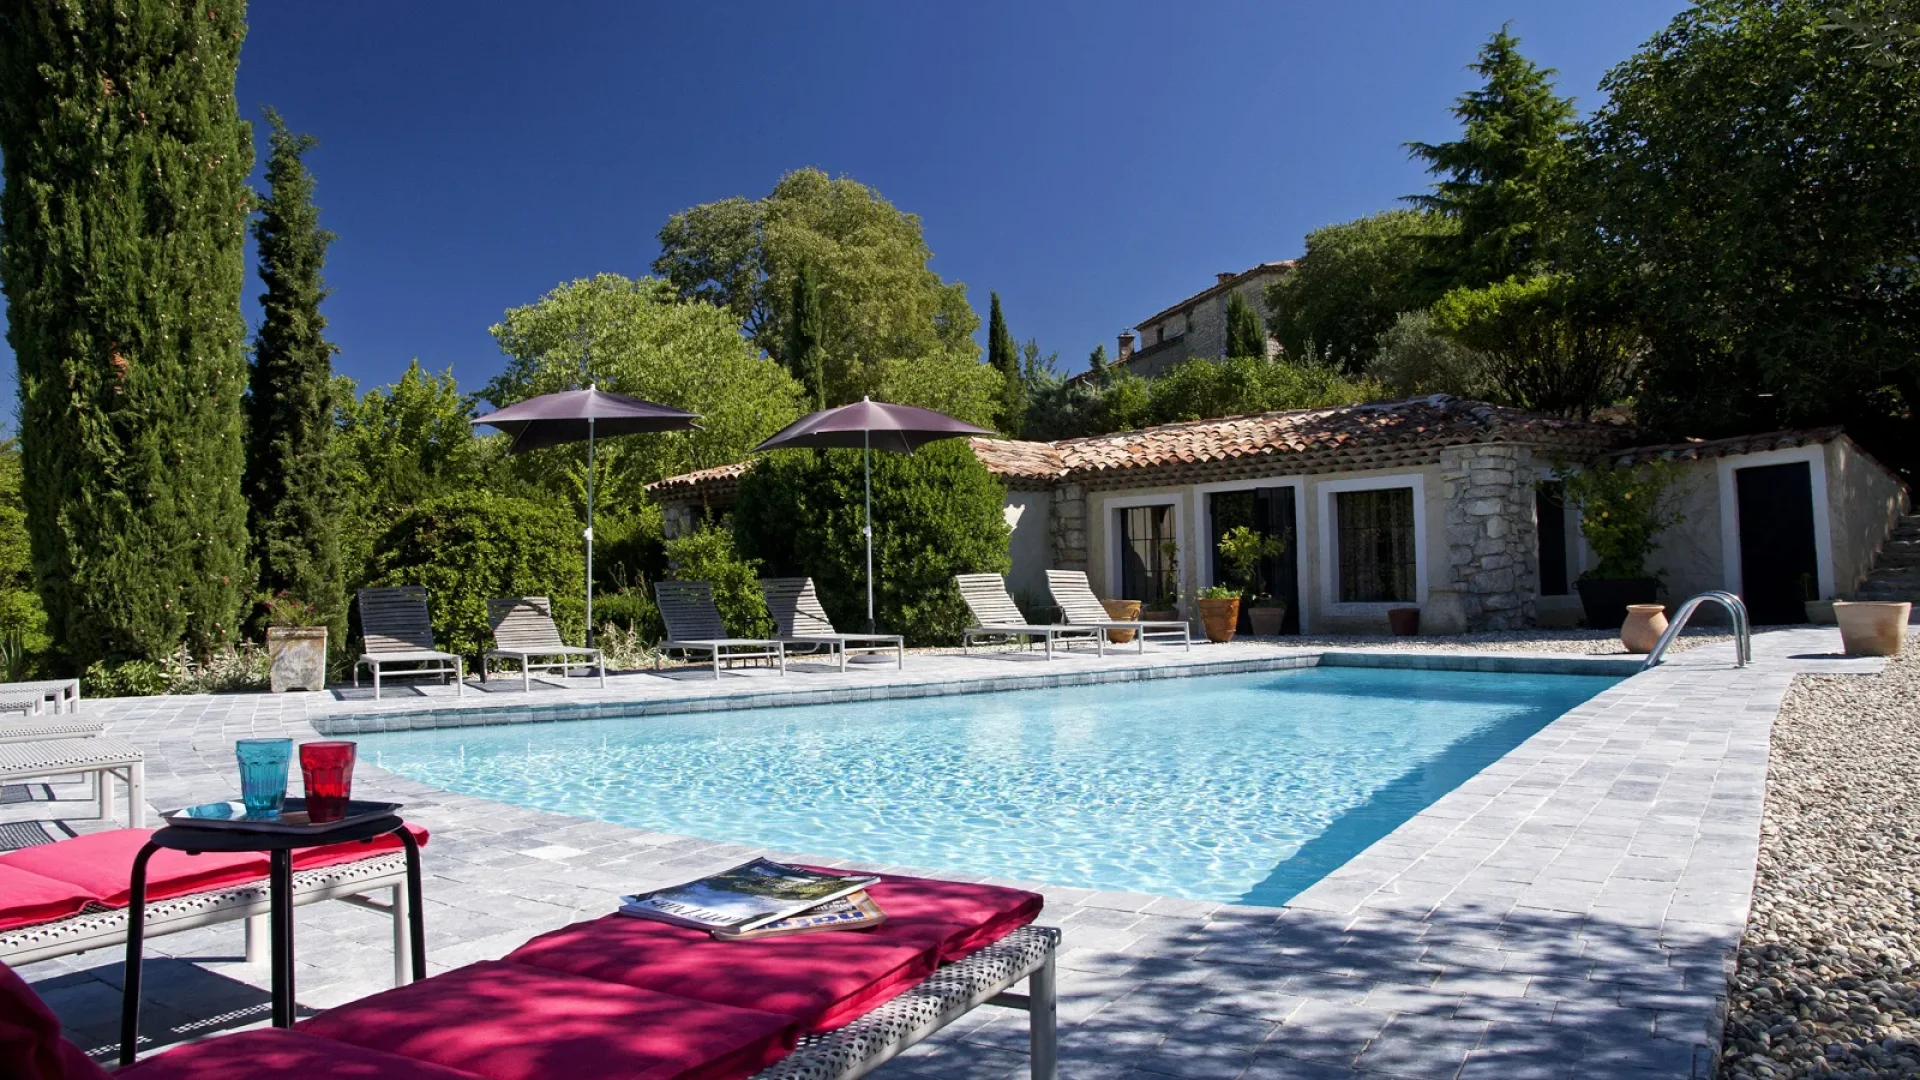 Espace extérieur avec piscine de l'hôtel "La Santoline" à Beaulieu